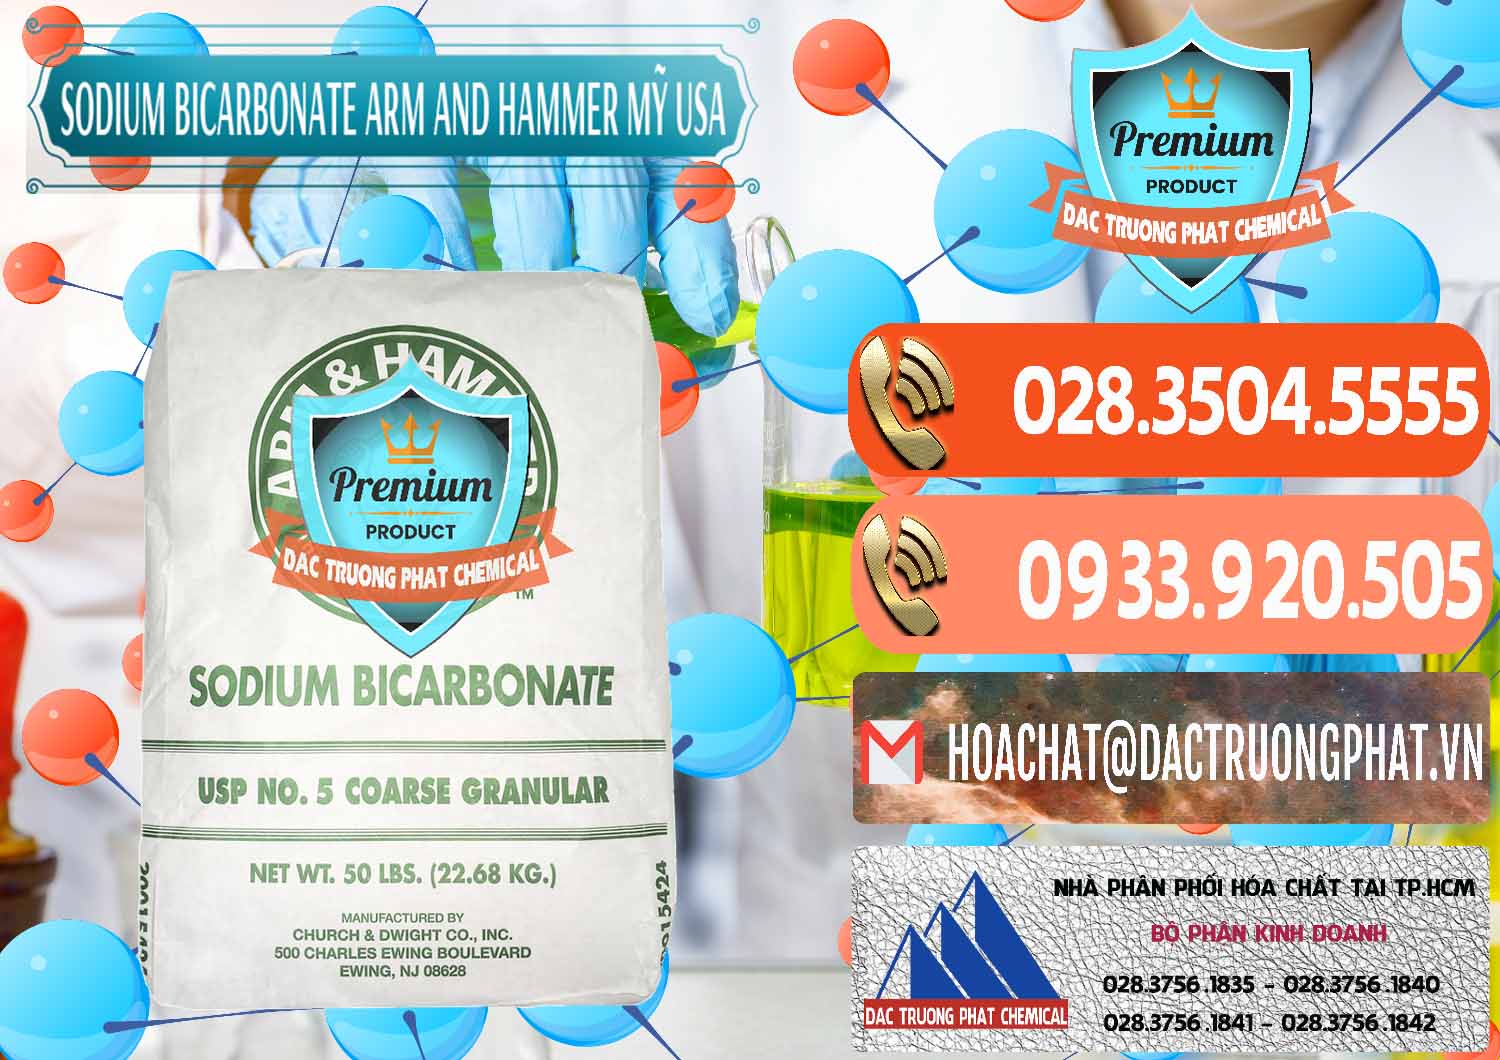 Đơn vị chuyên cung cấp & bán Sodium Bicarbonate – Bicar NaHCO3 Food Grade Arm And Hammer Mỹ USA - 0255 - Cty chuyên phân phối và kinh doanh hóa chất tại TP.HCM - hoachatmientay.com